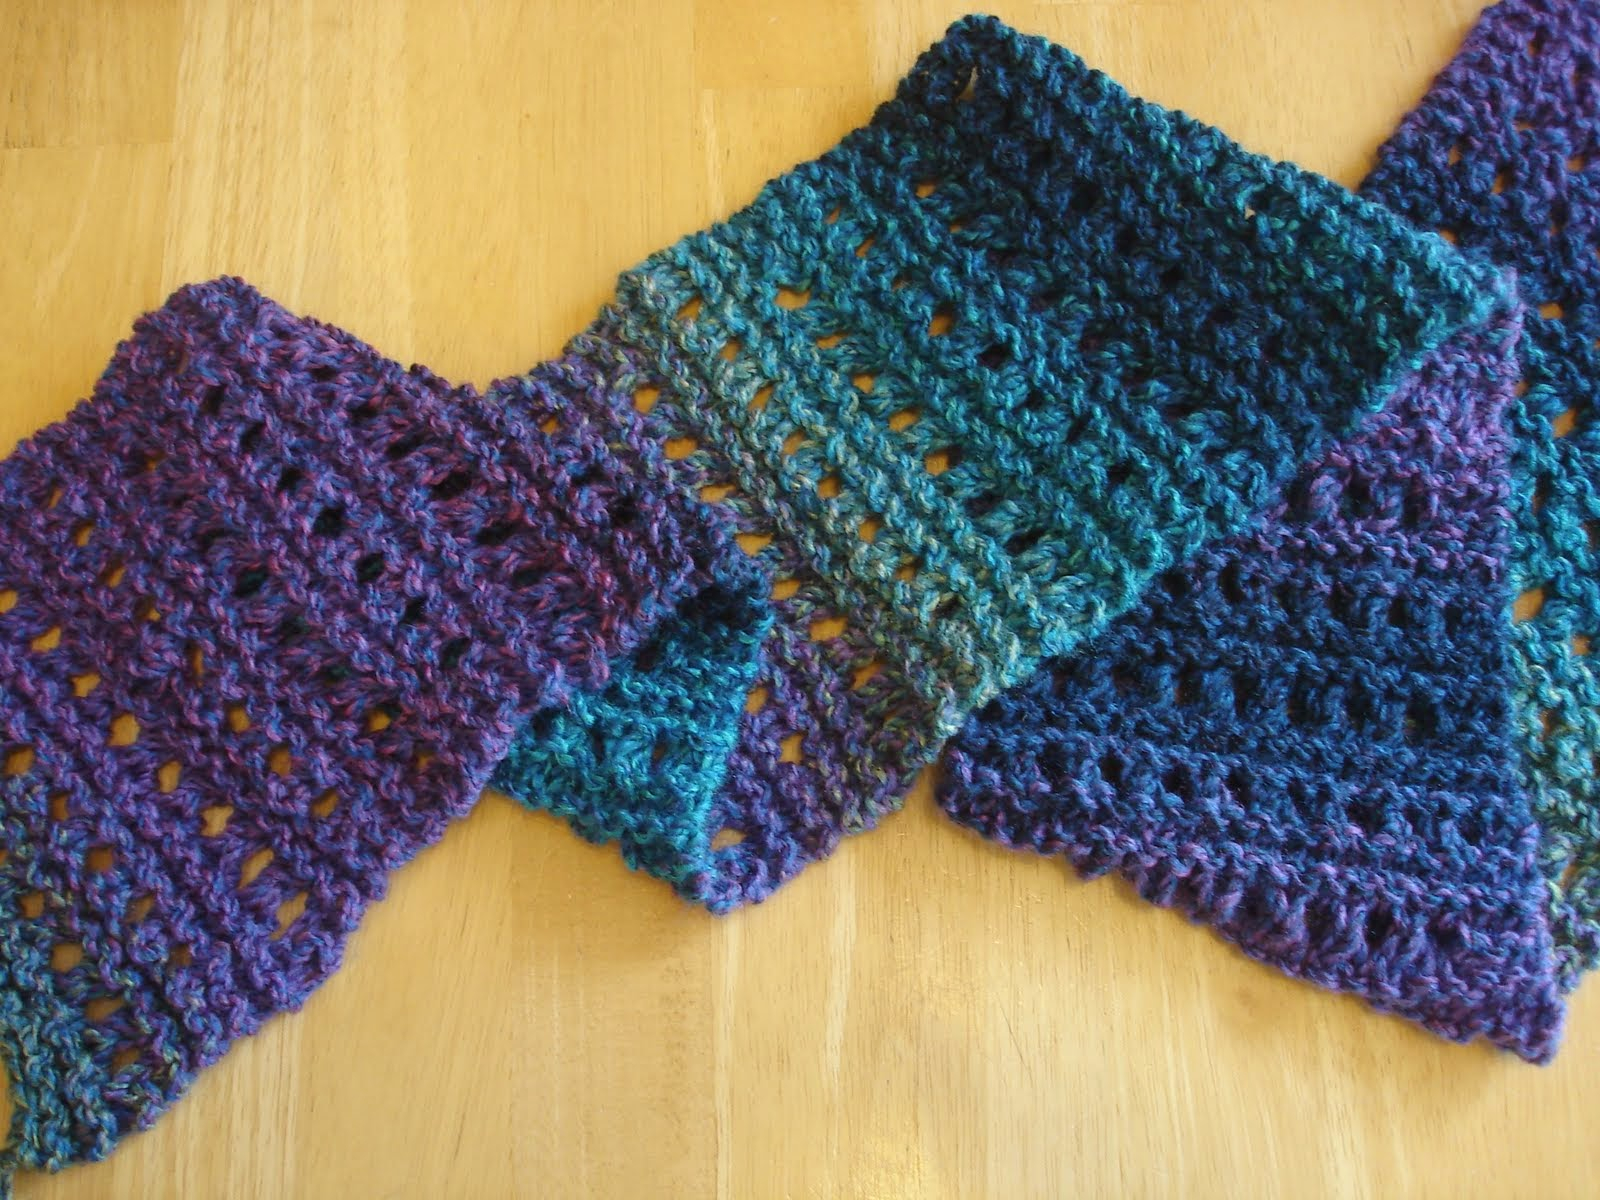 Easy Scarf Patterns Knitting Best Free Crochet Blanket Patterns For Beginners On Pinterest